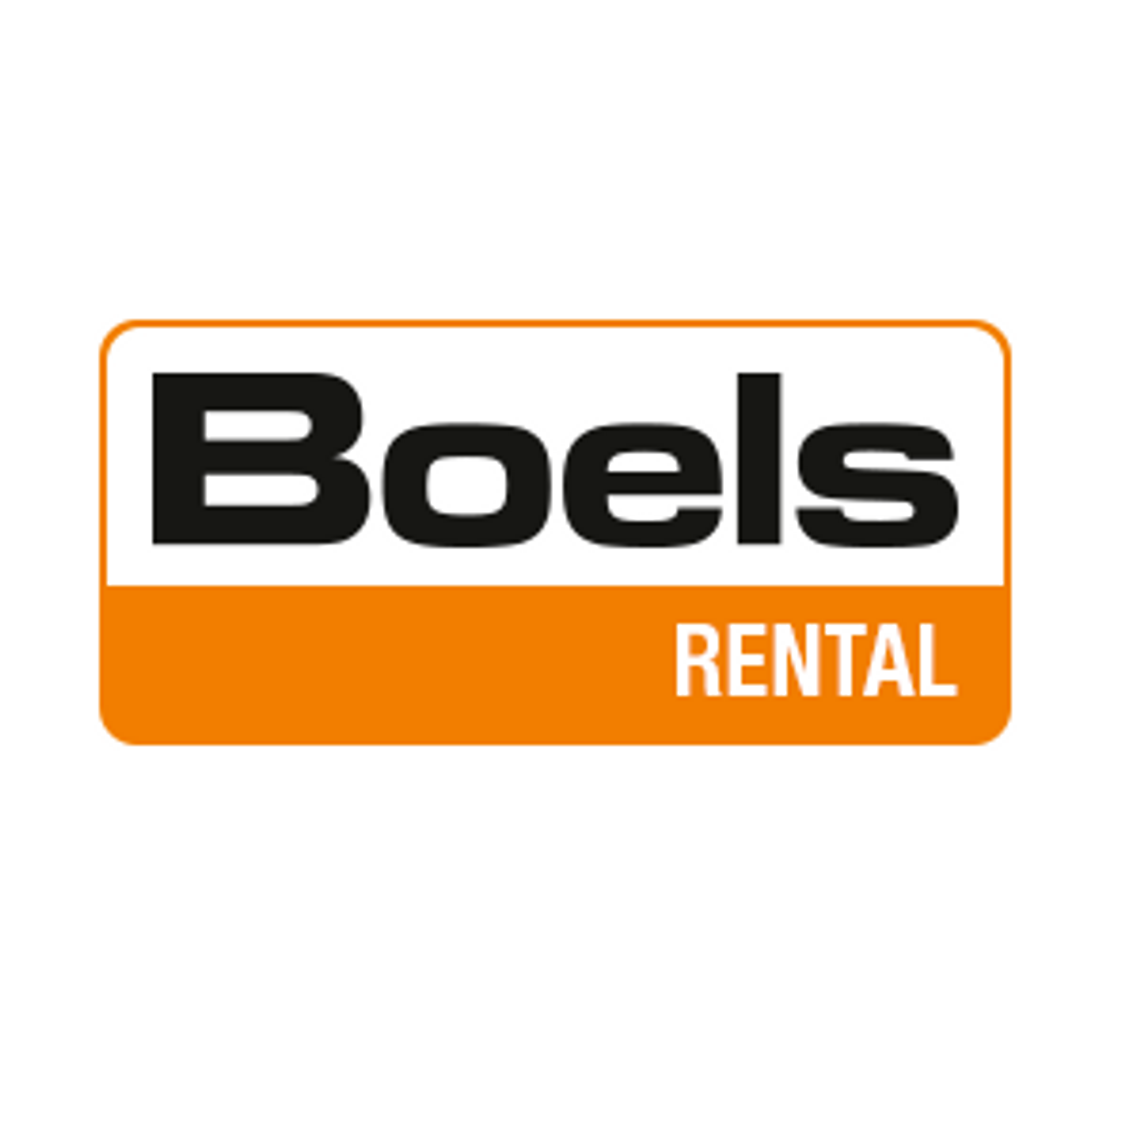 Boels Rental - wypożyczalnia sprzętu budowlanego